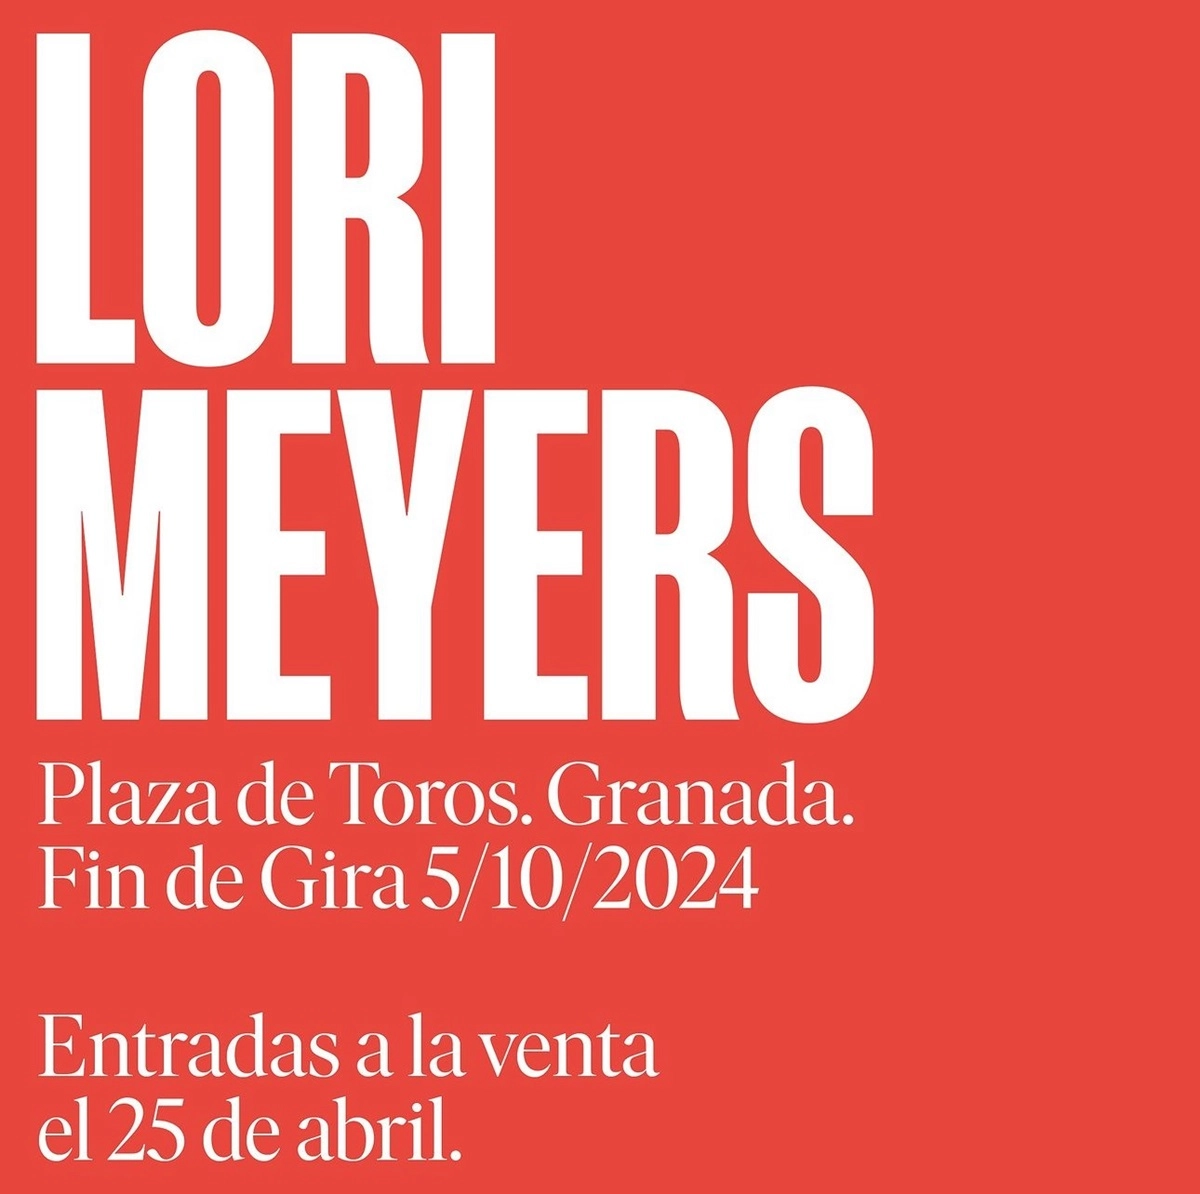 Lori Meyers en Plaza de Toros de Granada Tickets